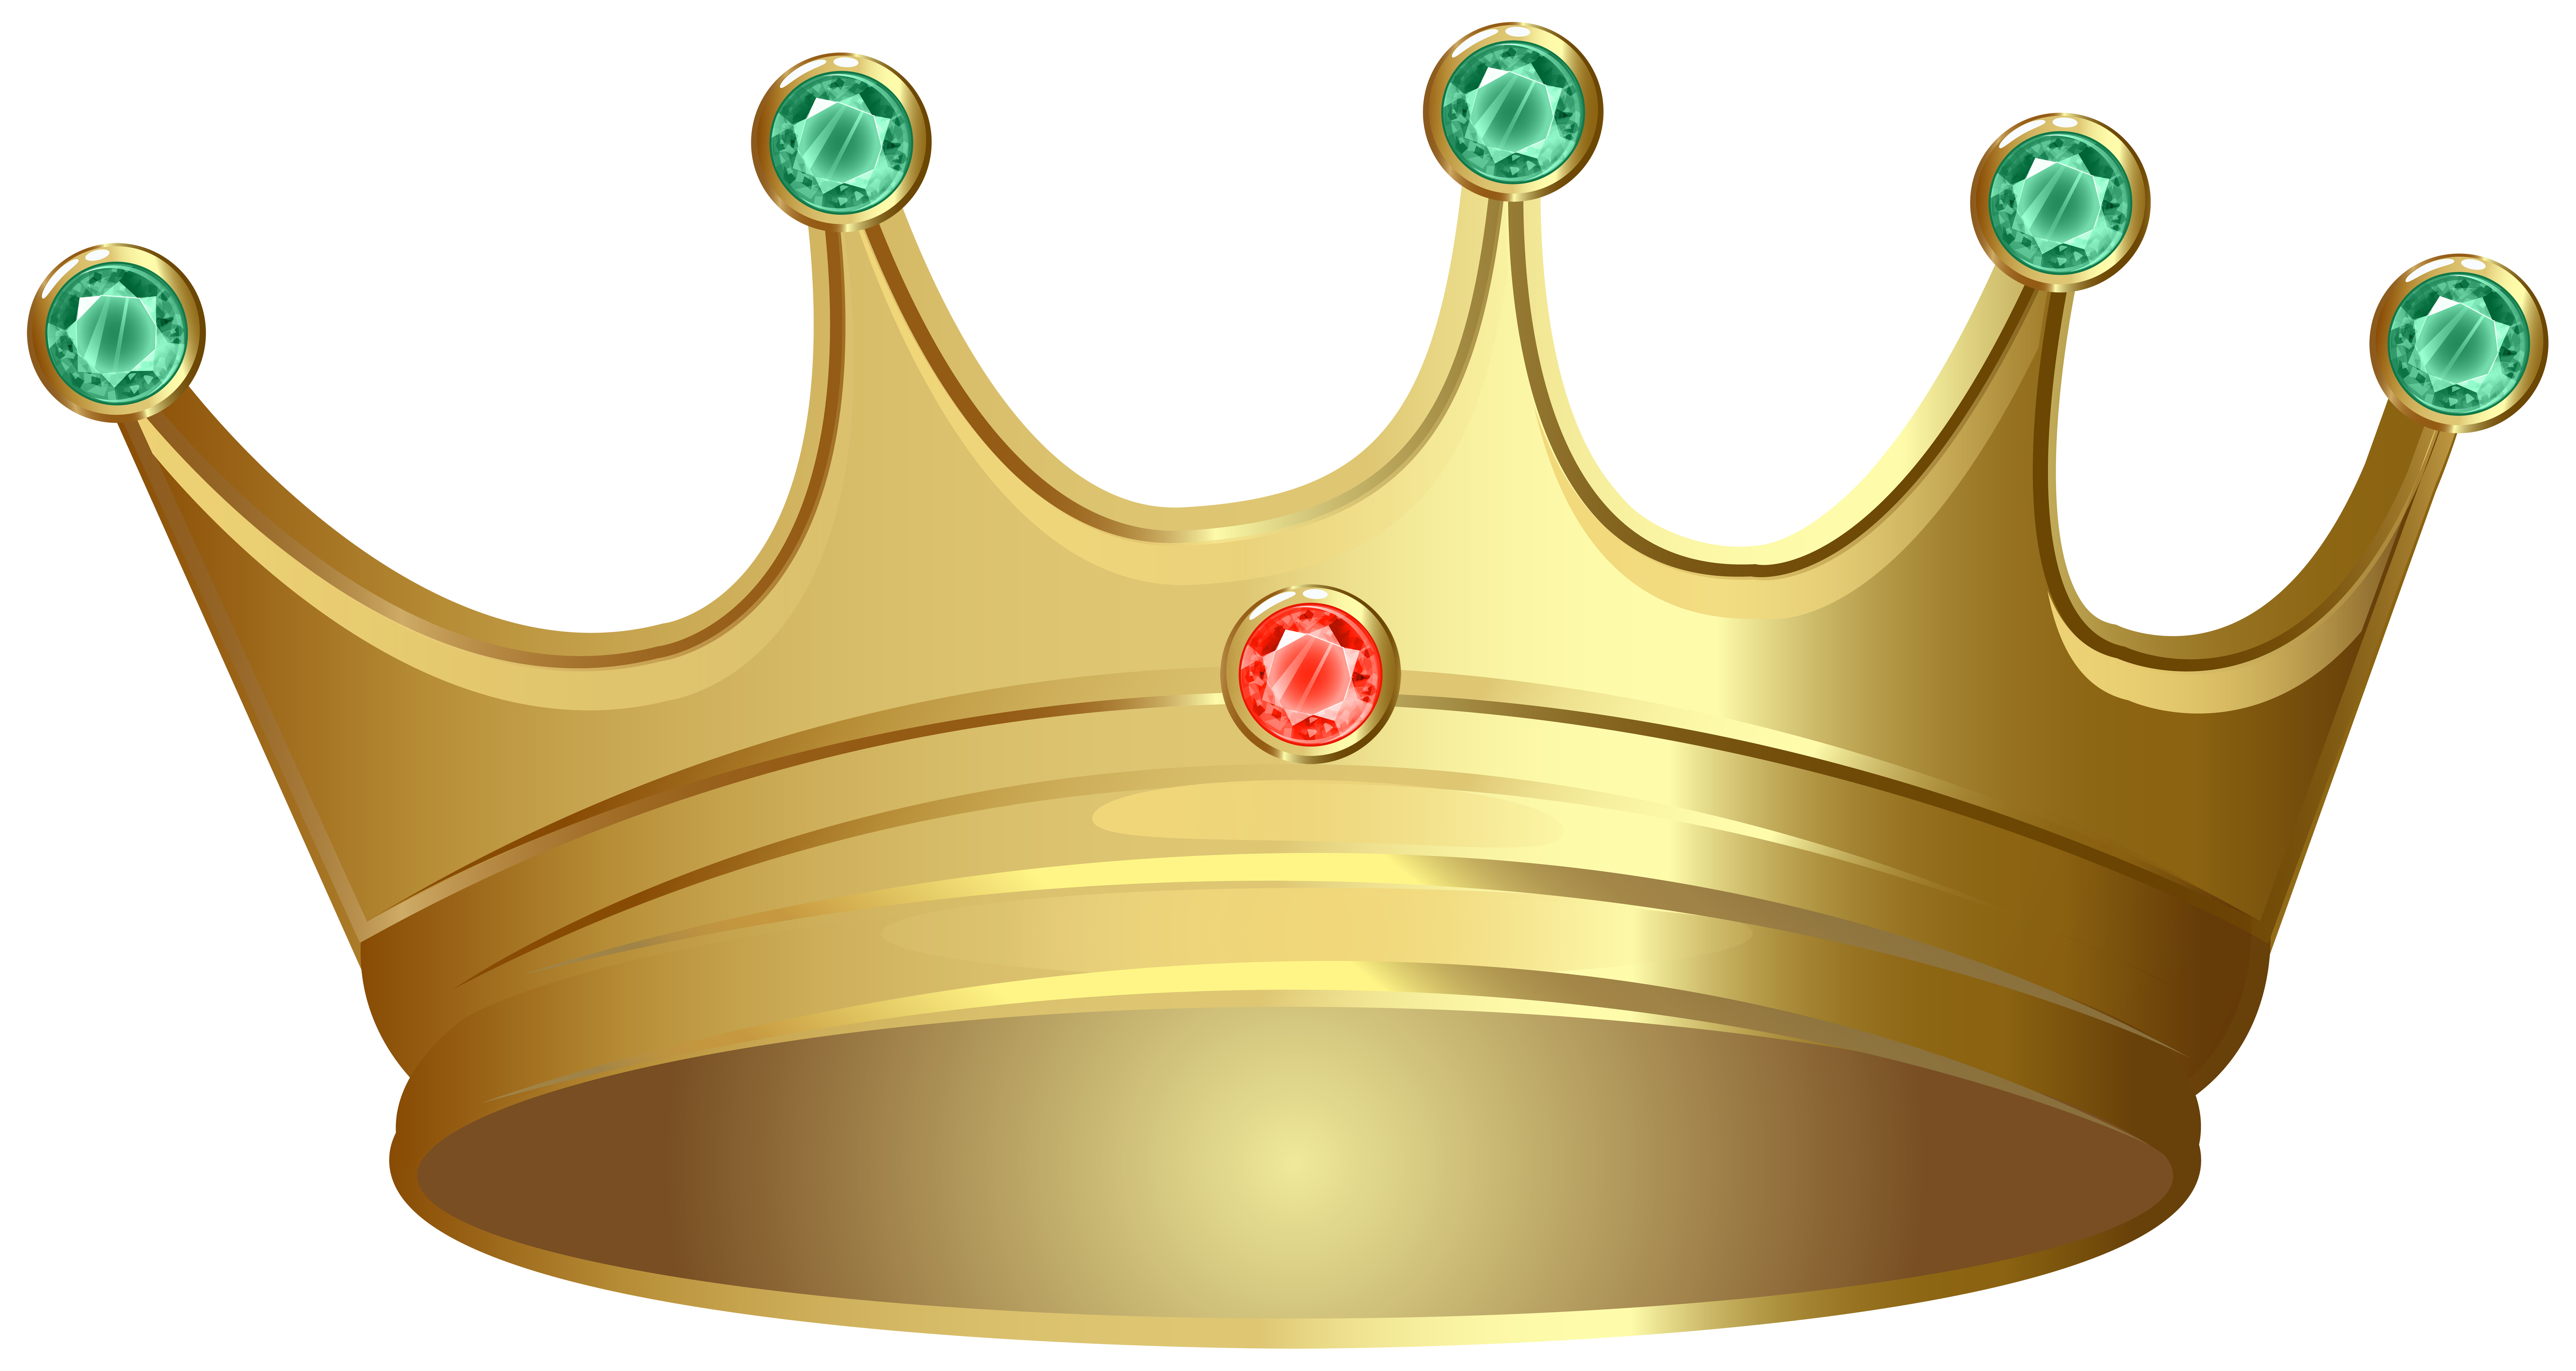 King crown logo Royalty Free Vector Image - VectorStock